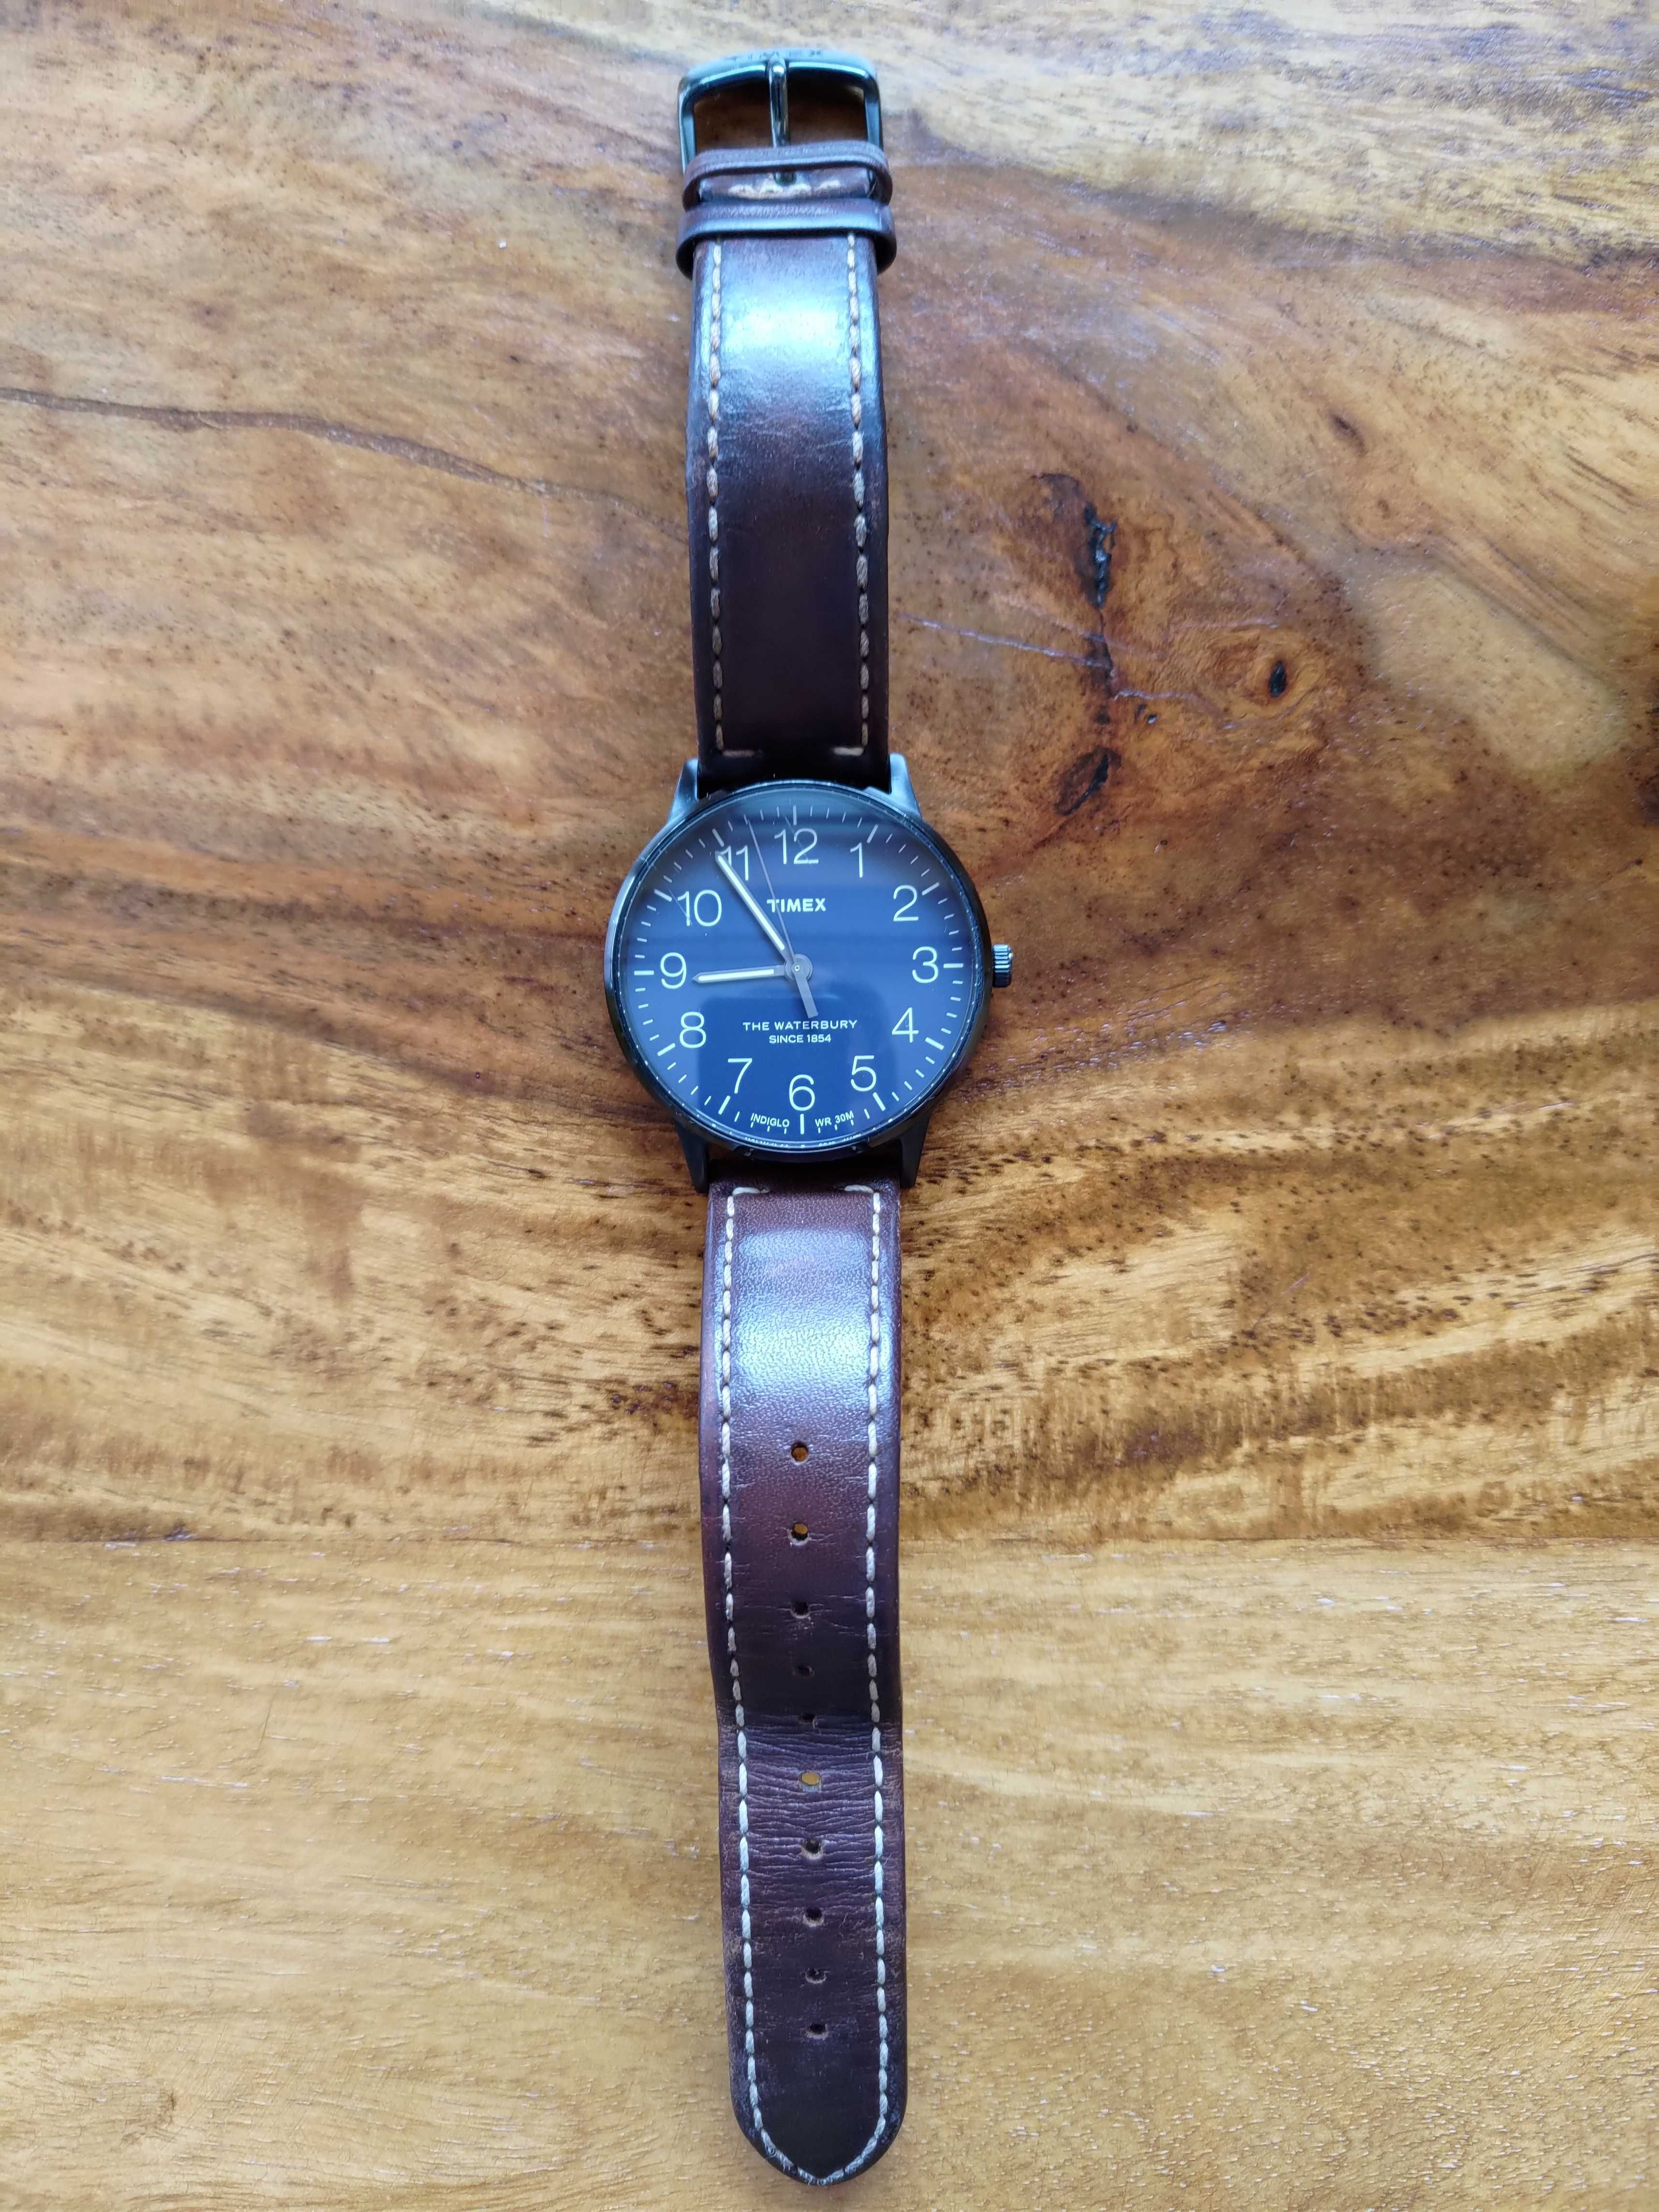 Zegarek Timex używany